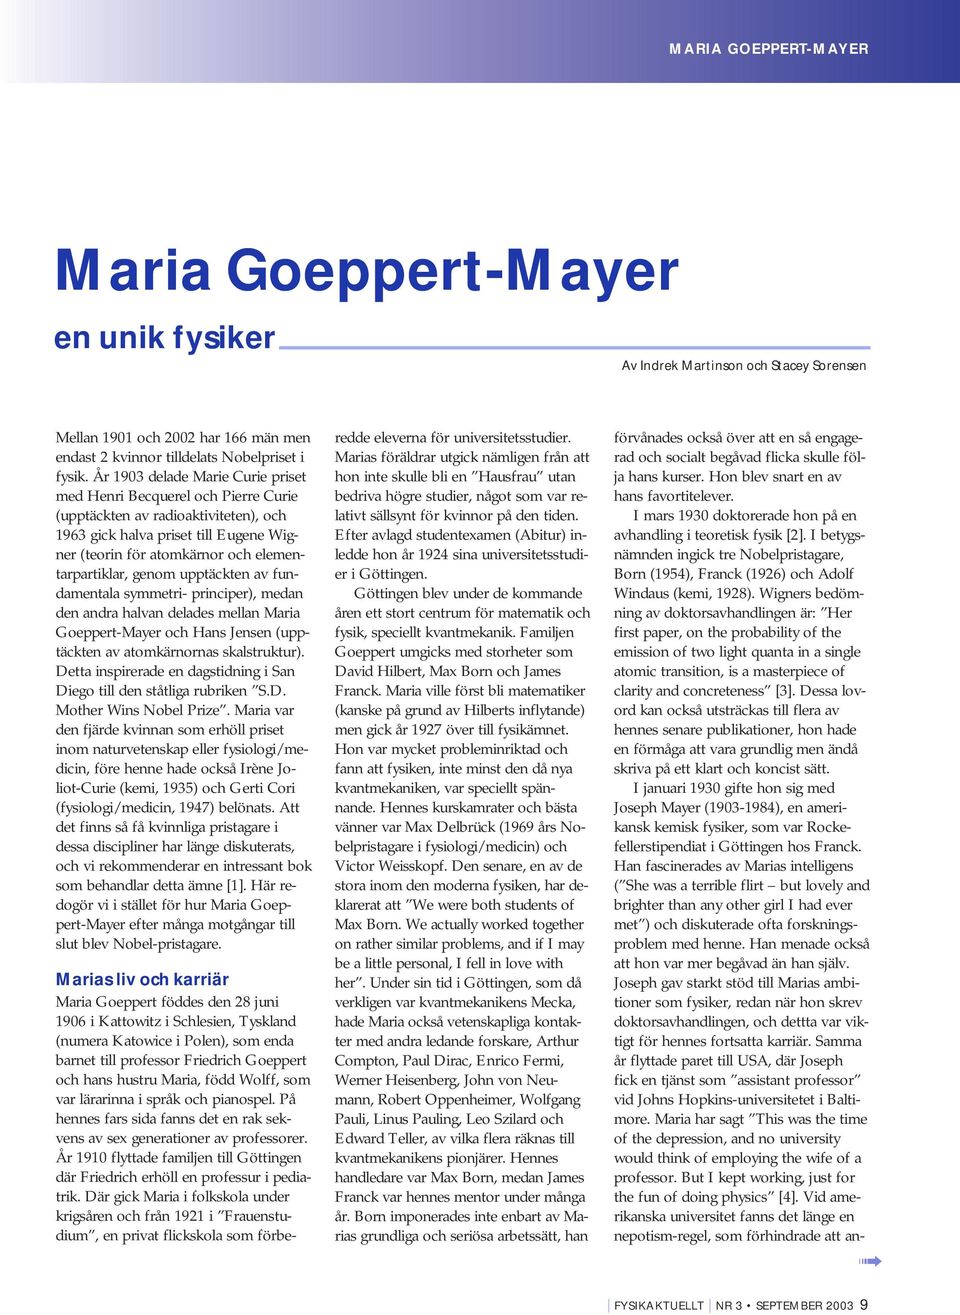 genom upptäckten av fundamentala symmetri- principer), medan den andra halvan delades mellan Maria Goeppert-Mayer och Hans Jensen (upptäckten av atomkärnornas skalstruktur).